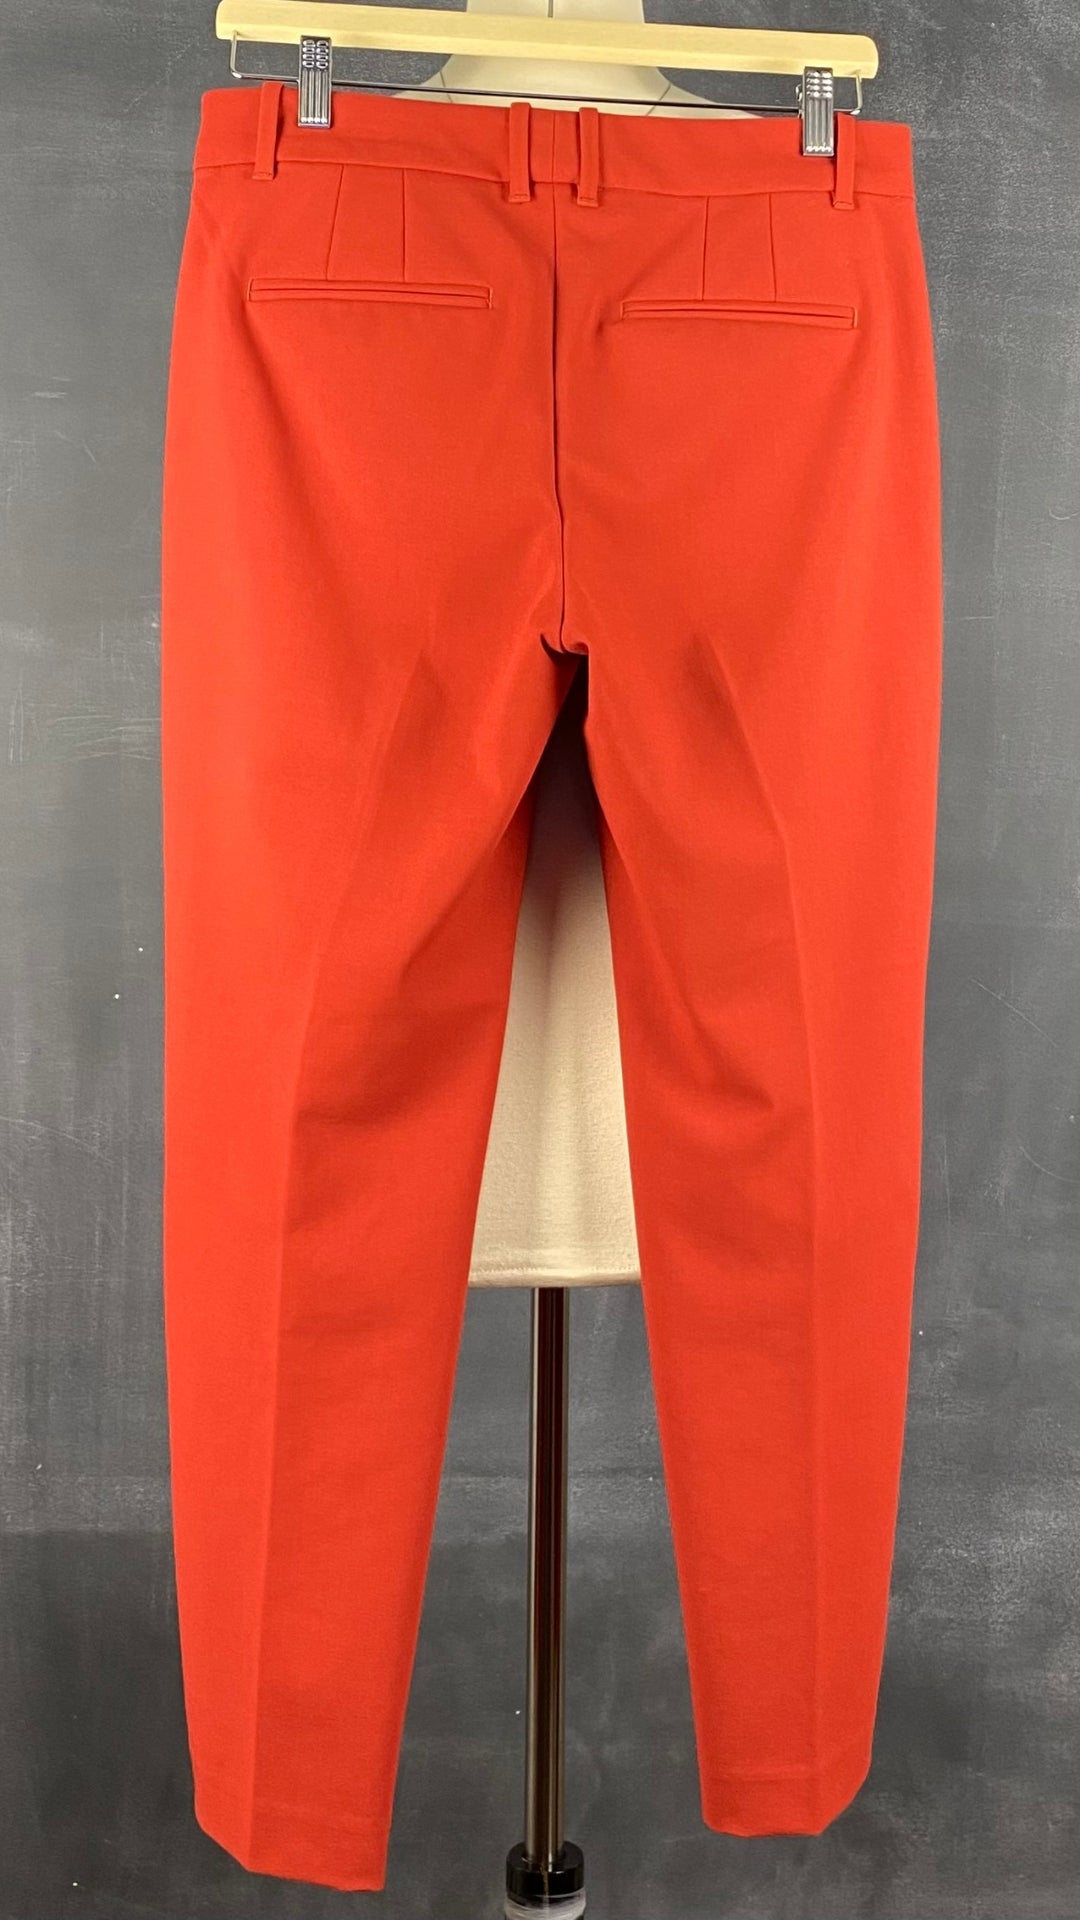 Pantalon coupe droite impeccable rouge-orangé Club Monaco, taille 6. Vue de dos.